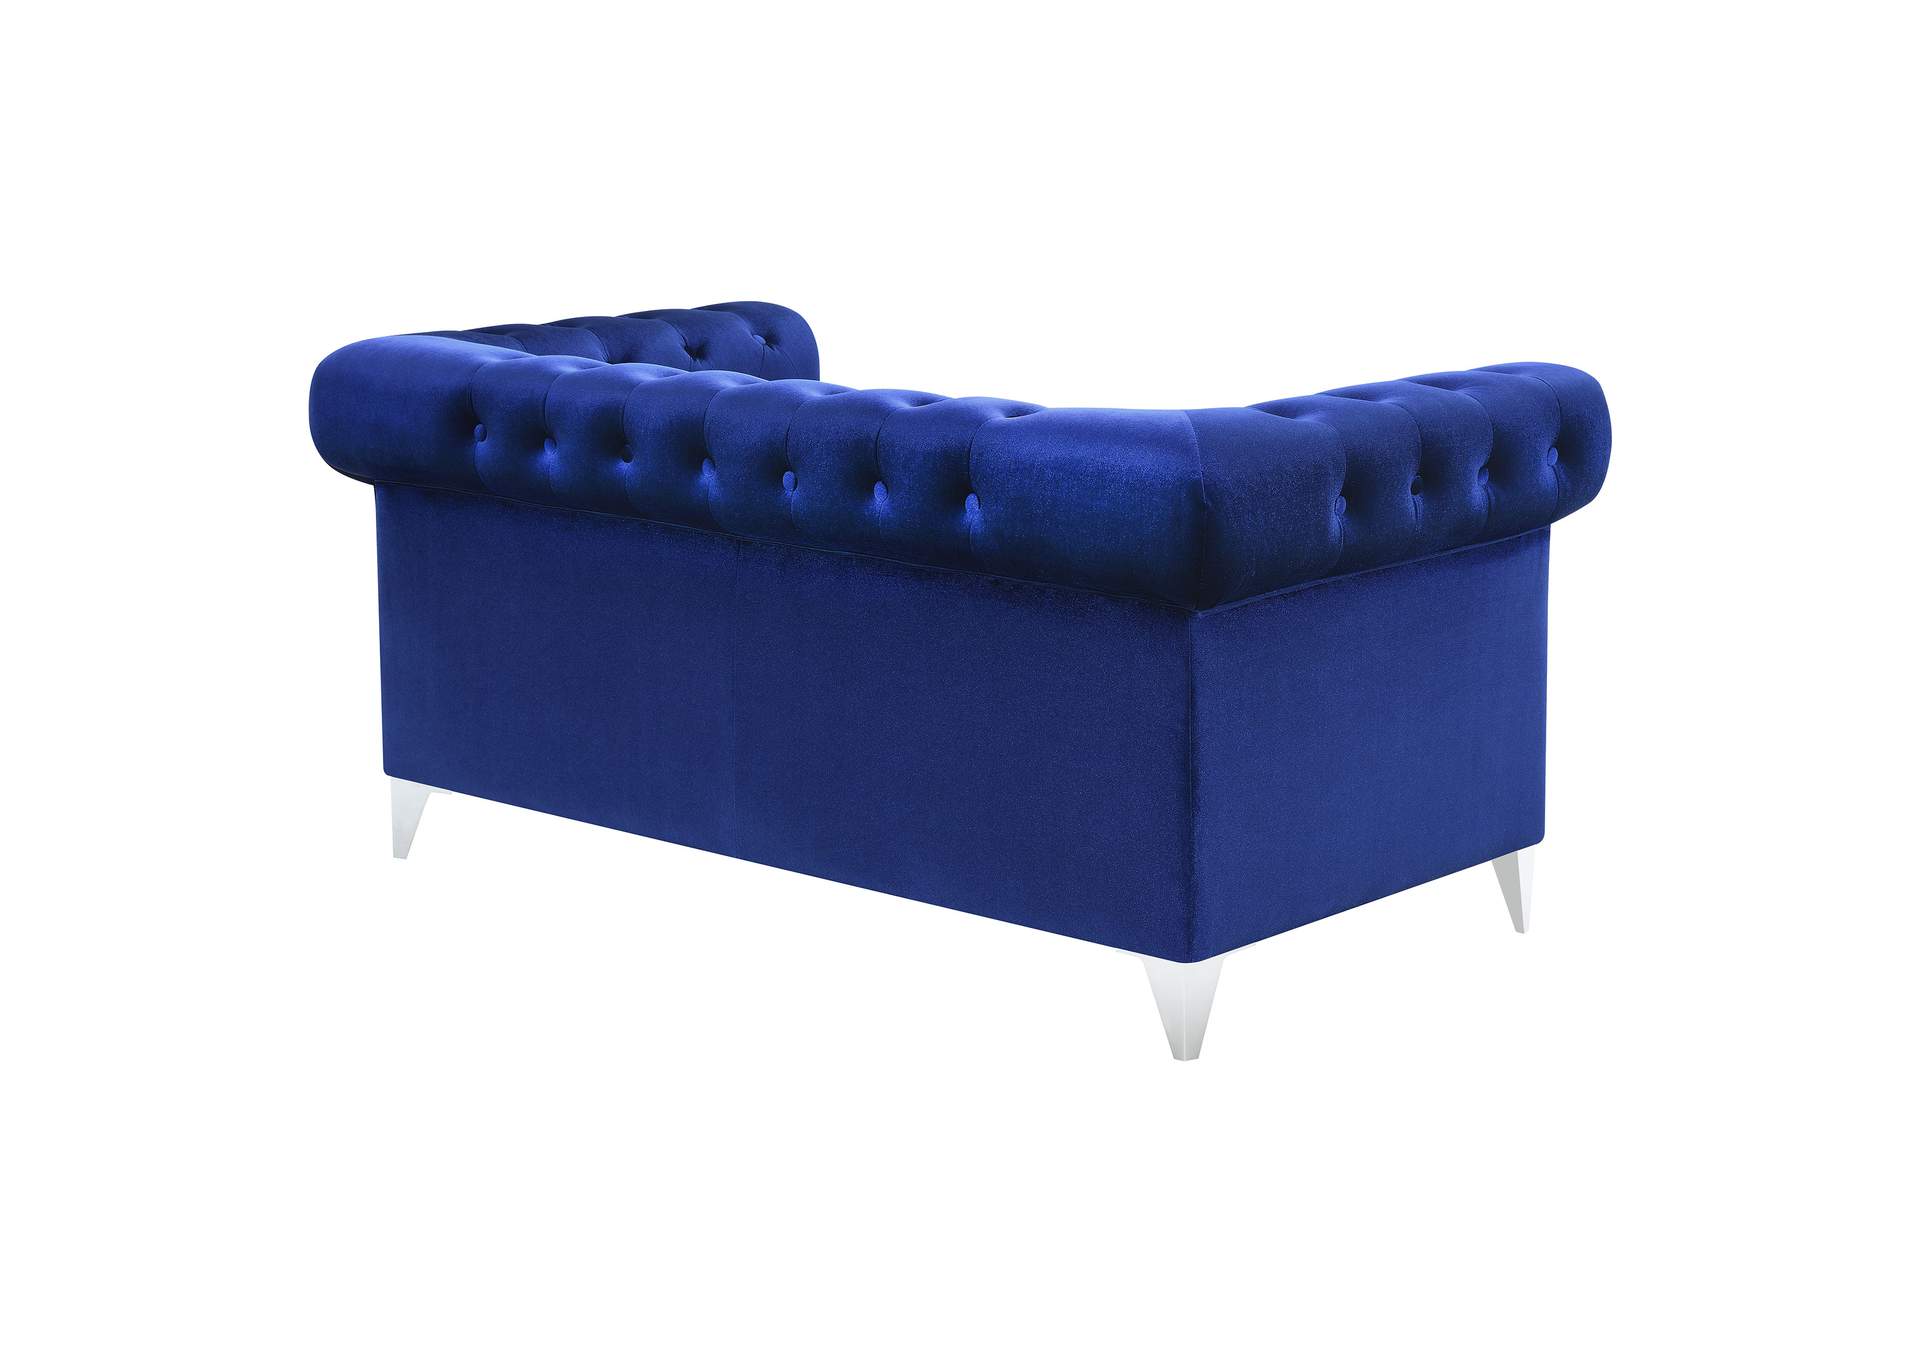 Bleker Tufted Tuxedo Arm Loveseat Blue,Coaster Furniture